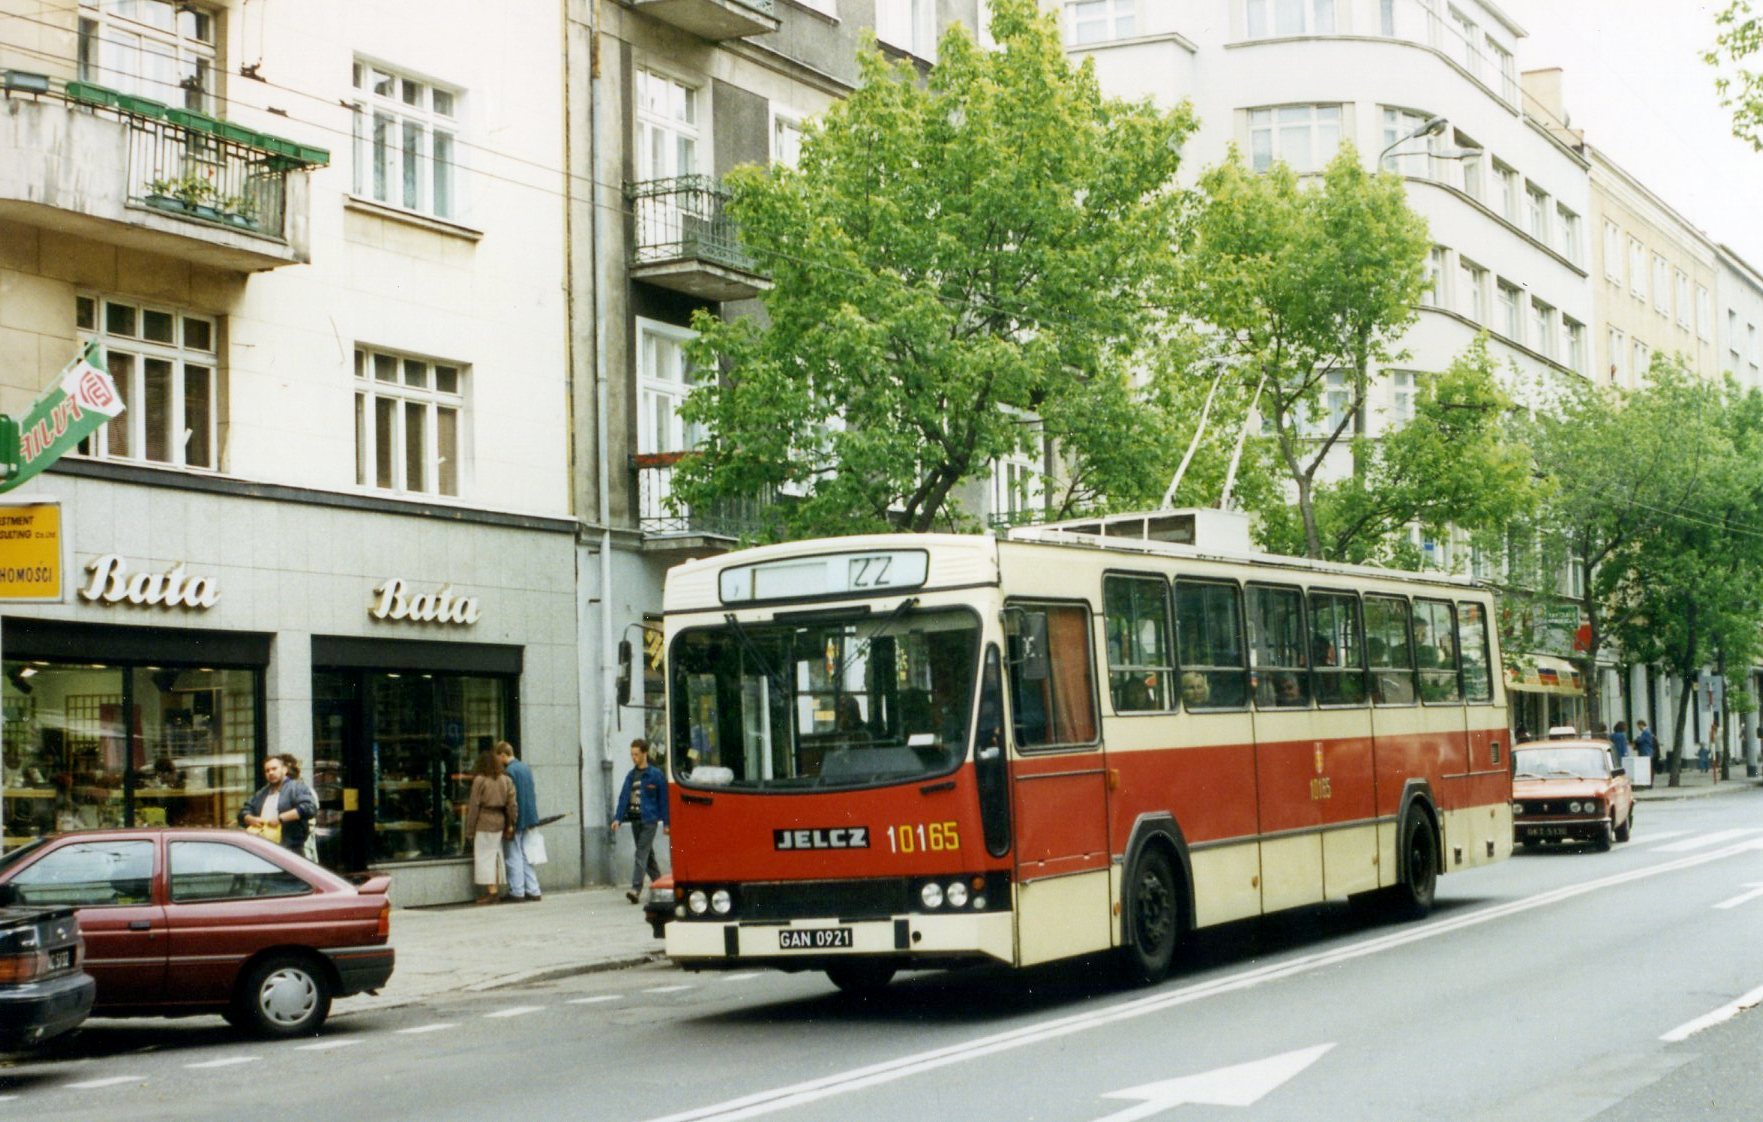 Gdynia_Jelcz_120ME_trolleybus_10165,_GAN_0921,_Linia_22,_with_Bata_shoe_shop,_June_1995_-_Flickr_-_sludgegulper.jpg